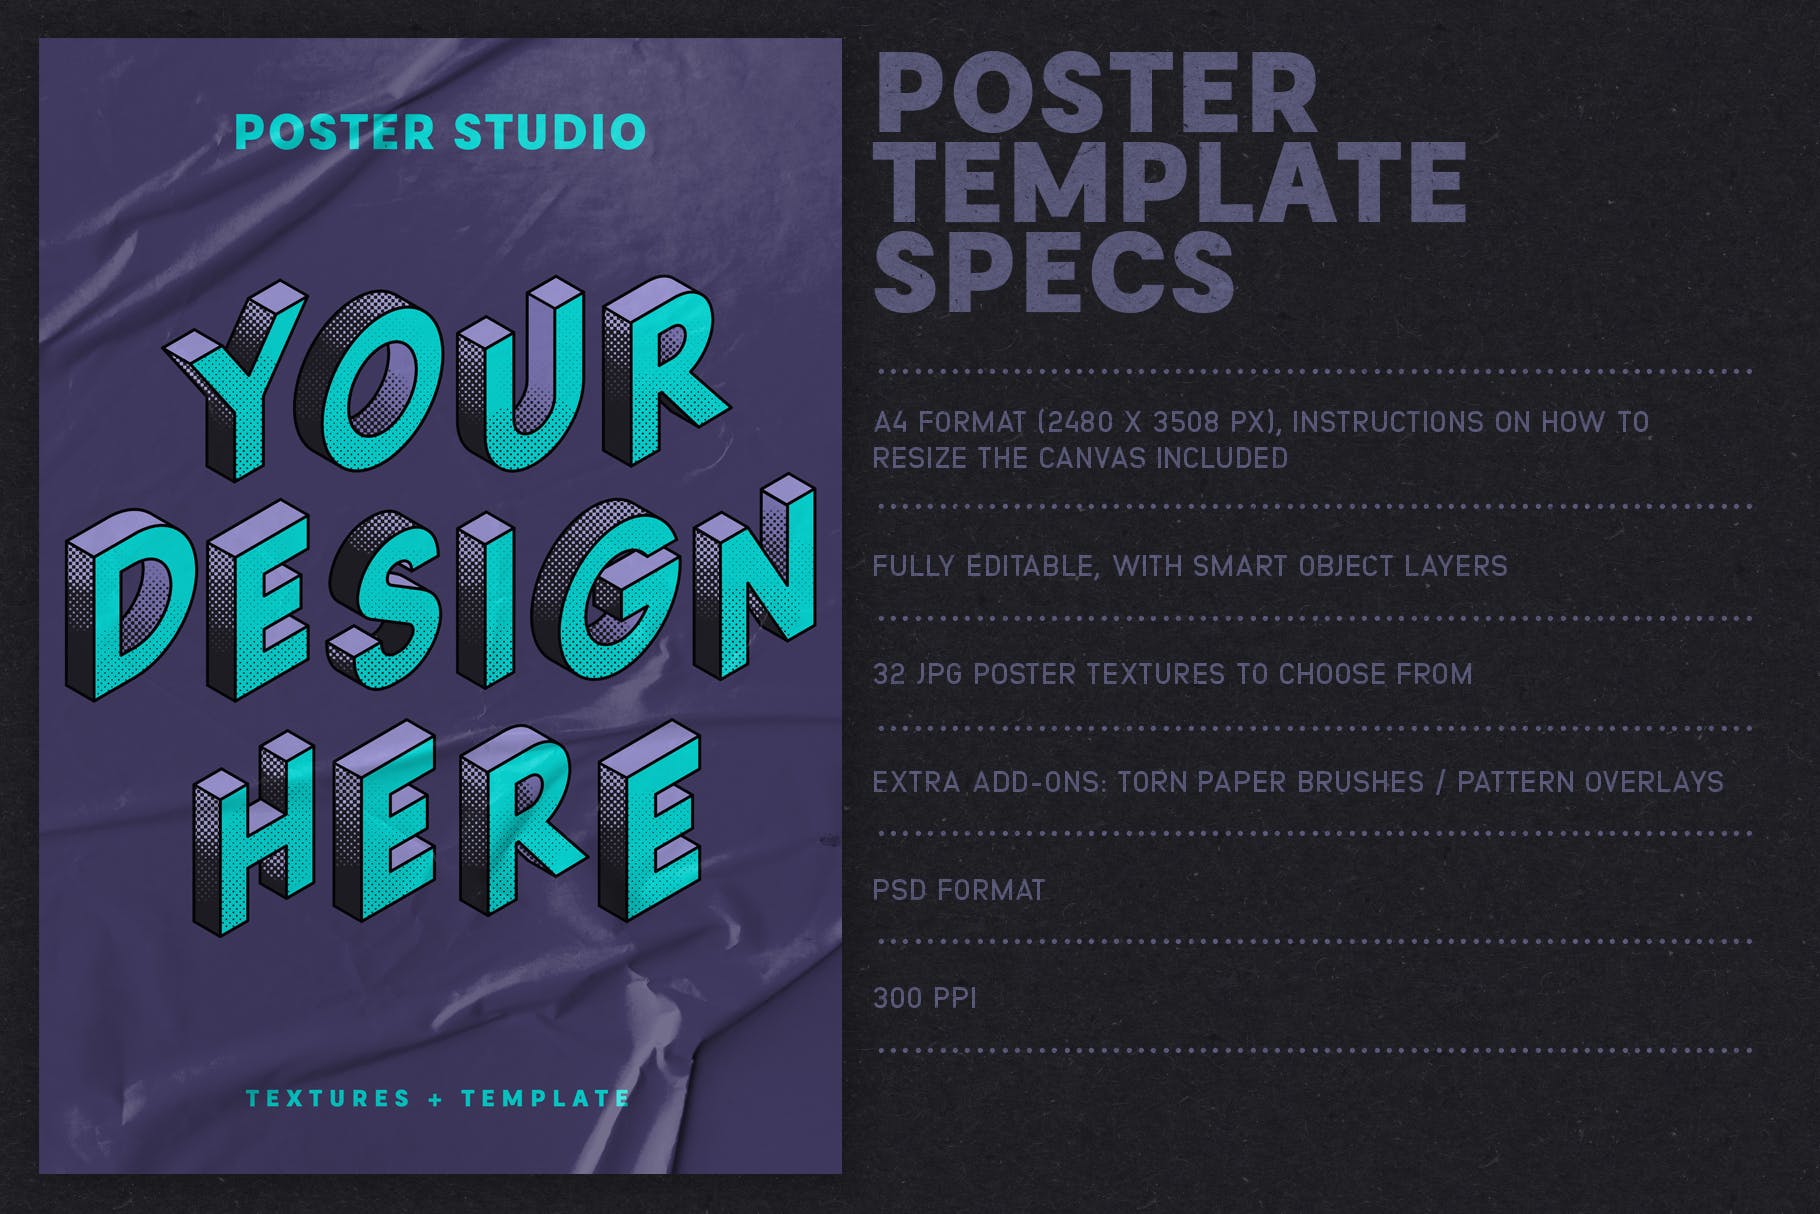 海报张贴效果图样式生成PS笔刷 Poster Studio for Photoshop插图(4)